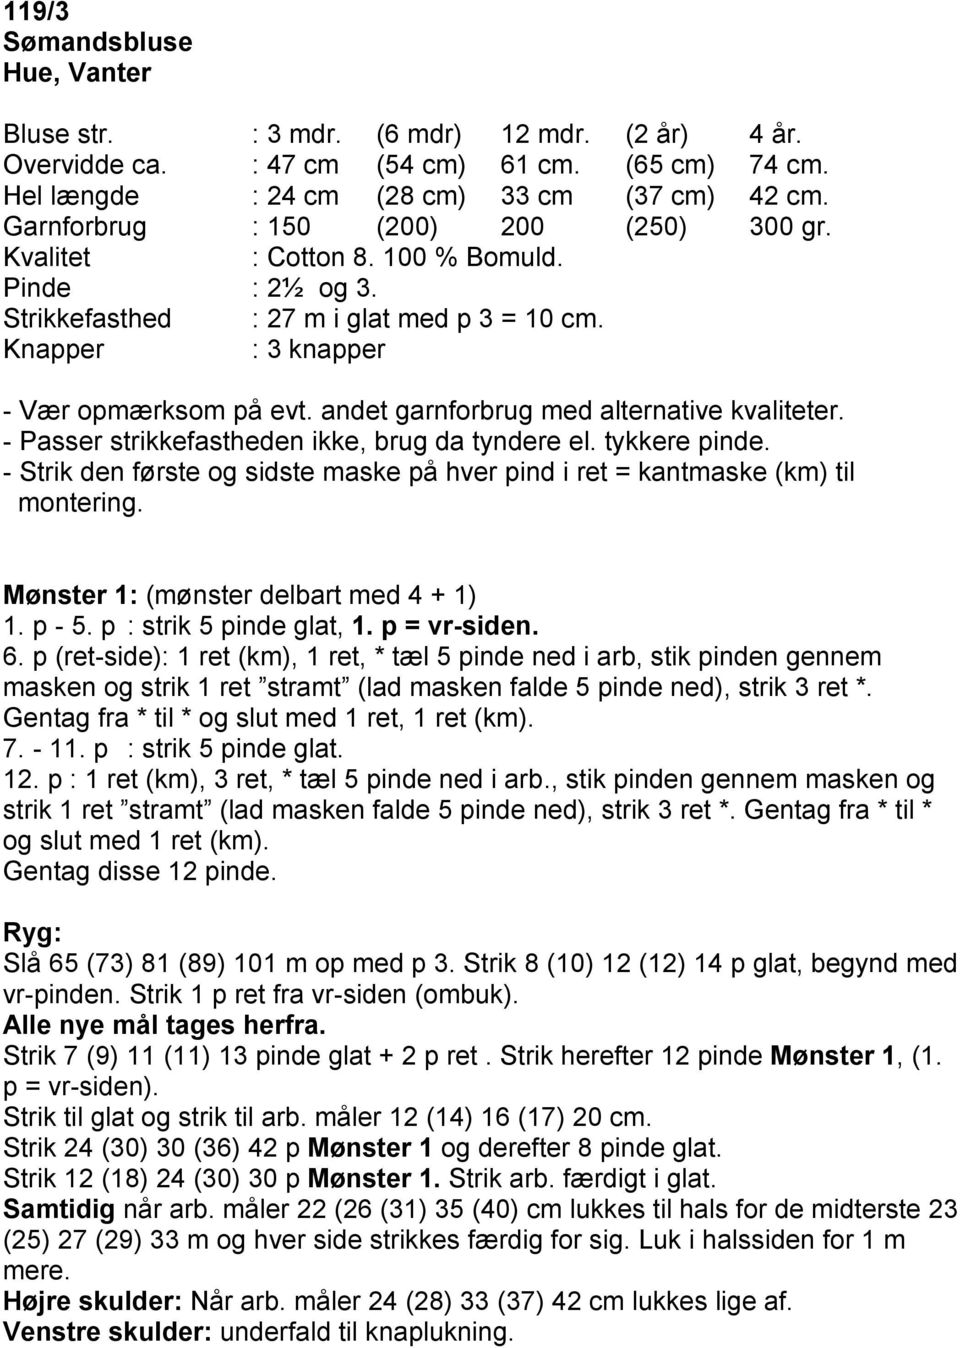 119/3 Sømandsbluse Hue, Vanter PDF Gratis download